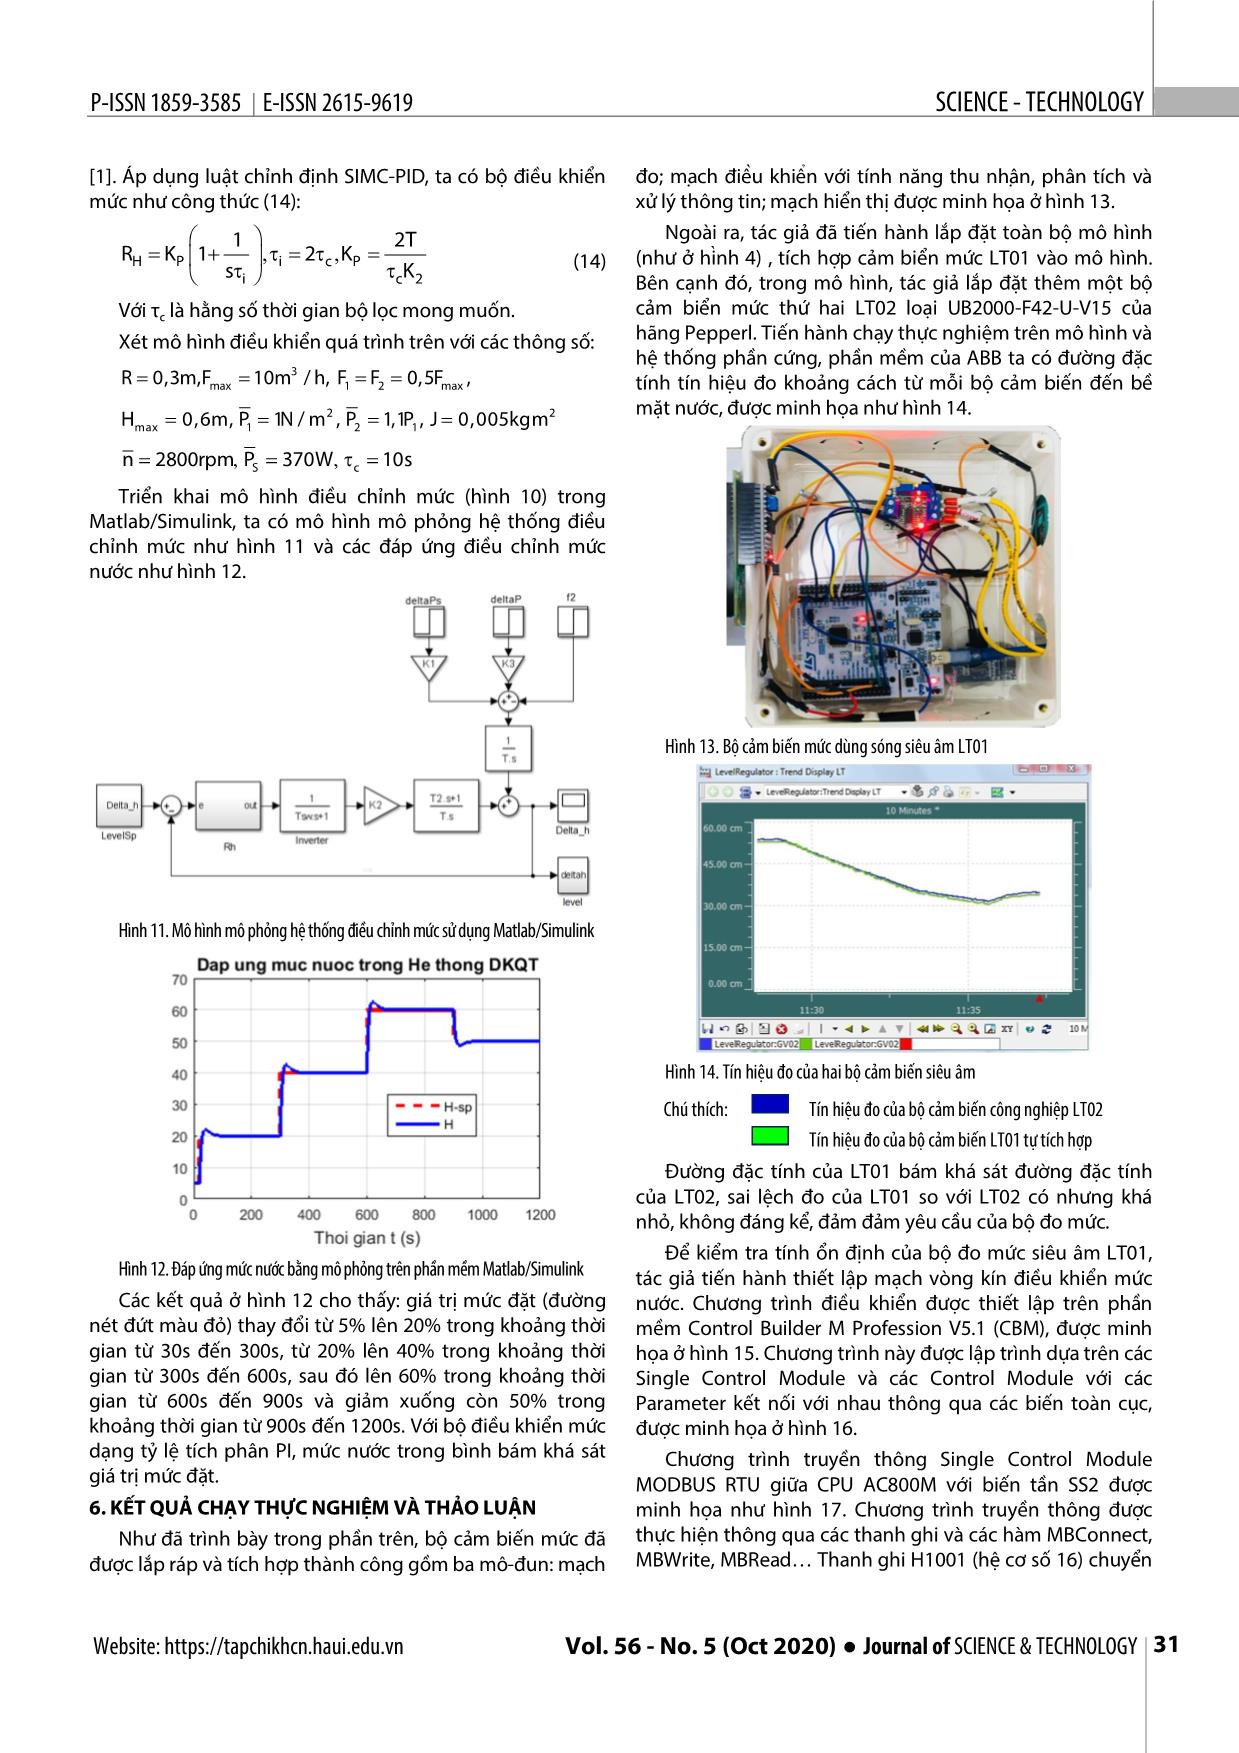 Thiết kế, tích hợp bộ cảm biến mức siêu âm trong hệ thống Scada trang 5